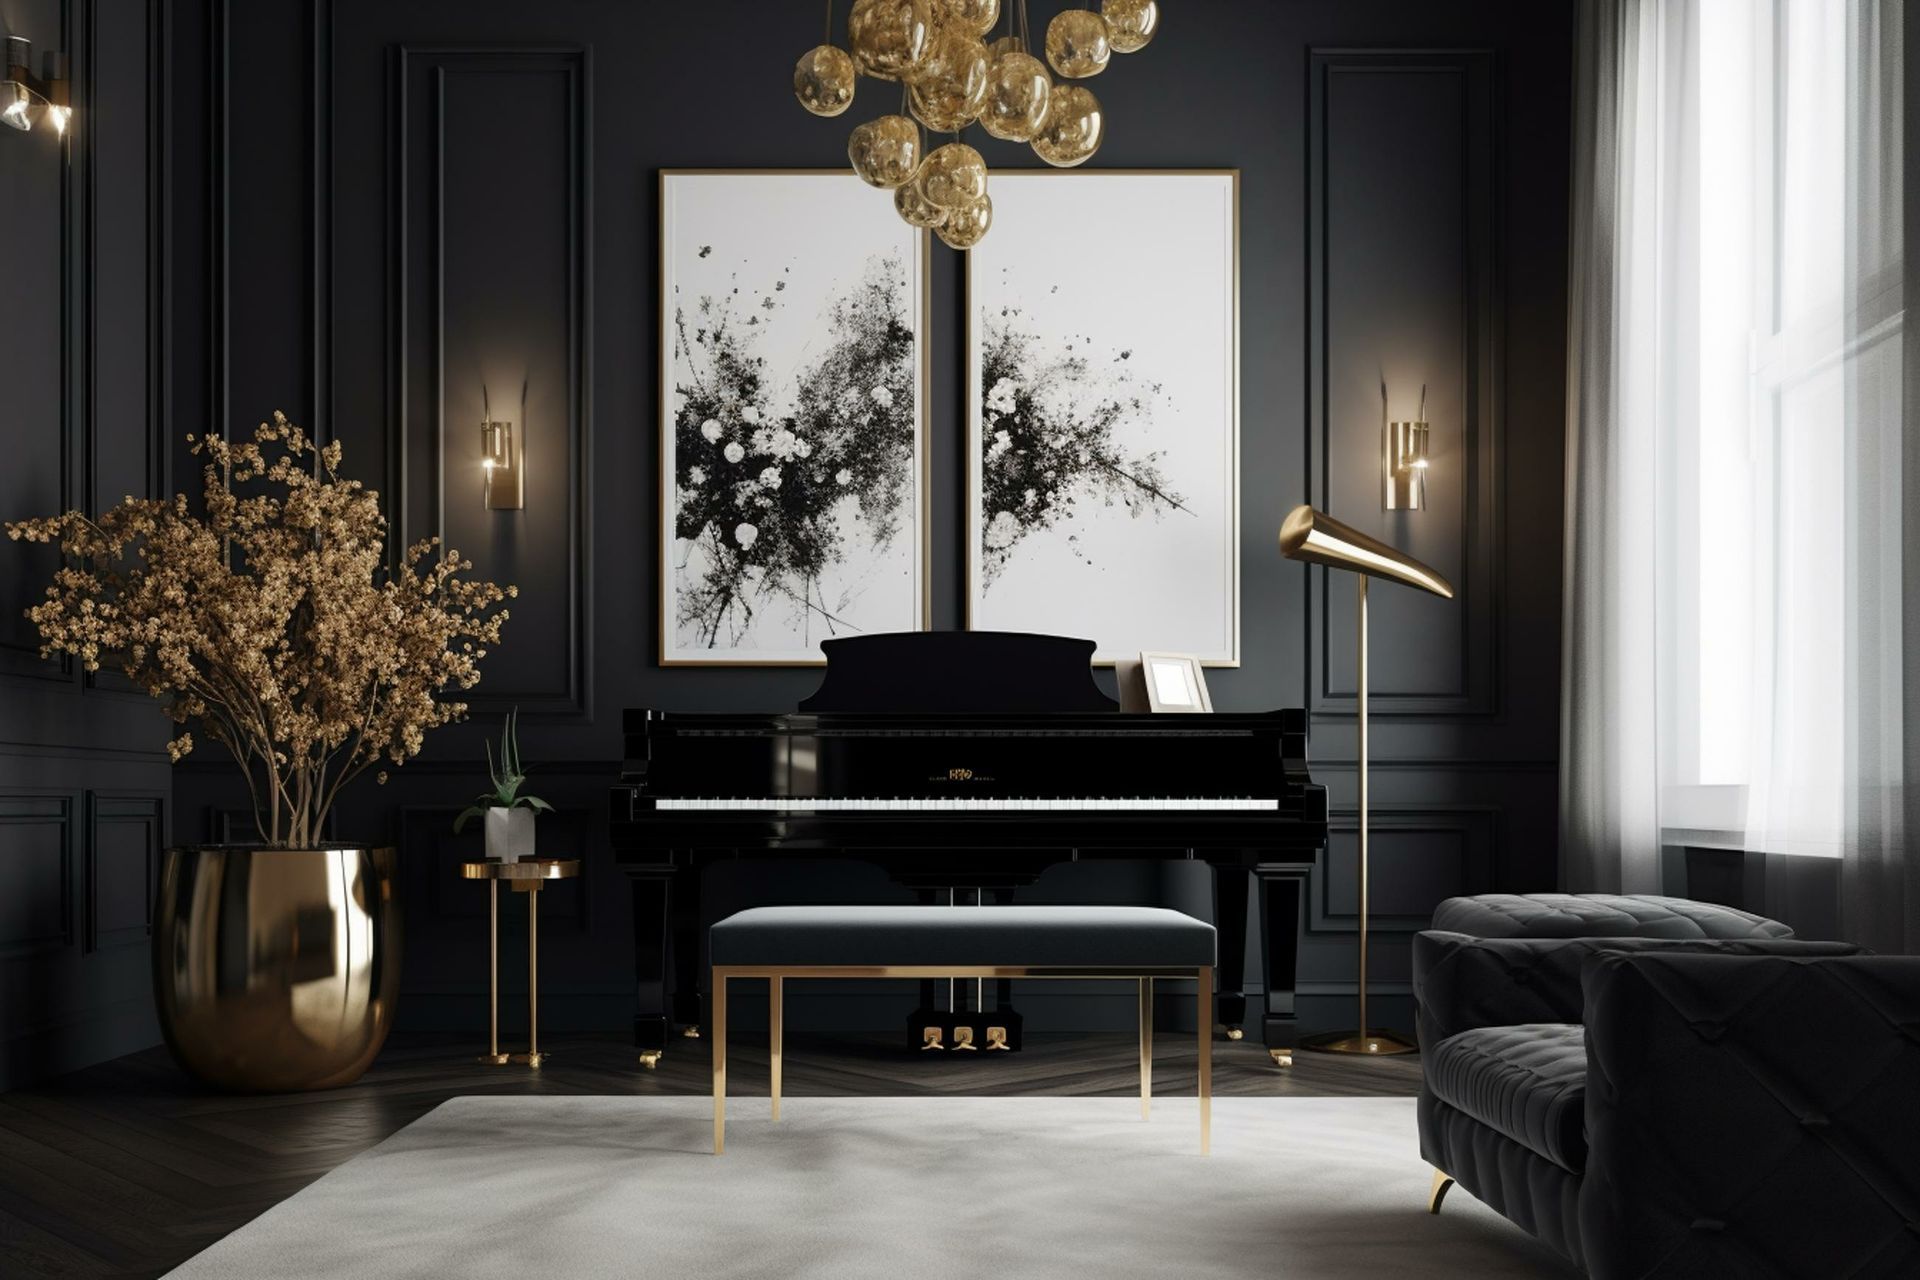 Piano noir dans au fond d'une pièce grise